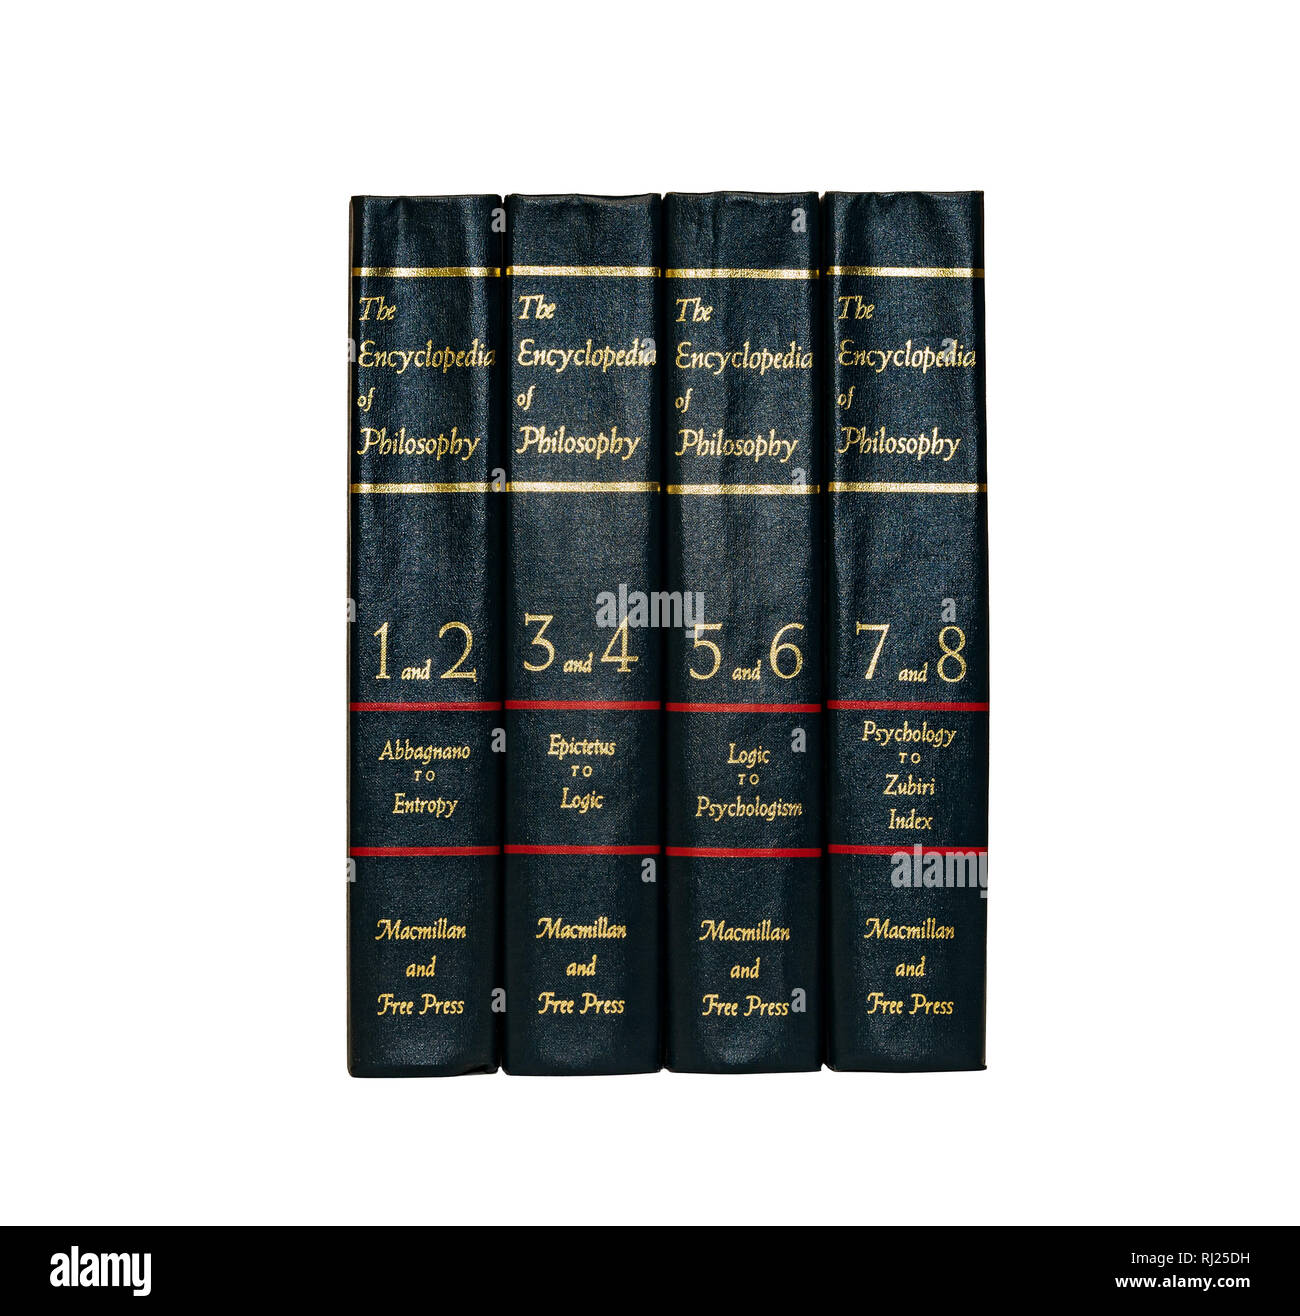 Prenota immagine: l'Enciclopedia della filosofia, otto volumi in quattro libri, Paul Edwards, editor-in-chief, spine che mostra. Isolato su sfondo bianco. Foto Stock